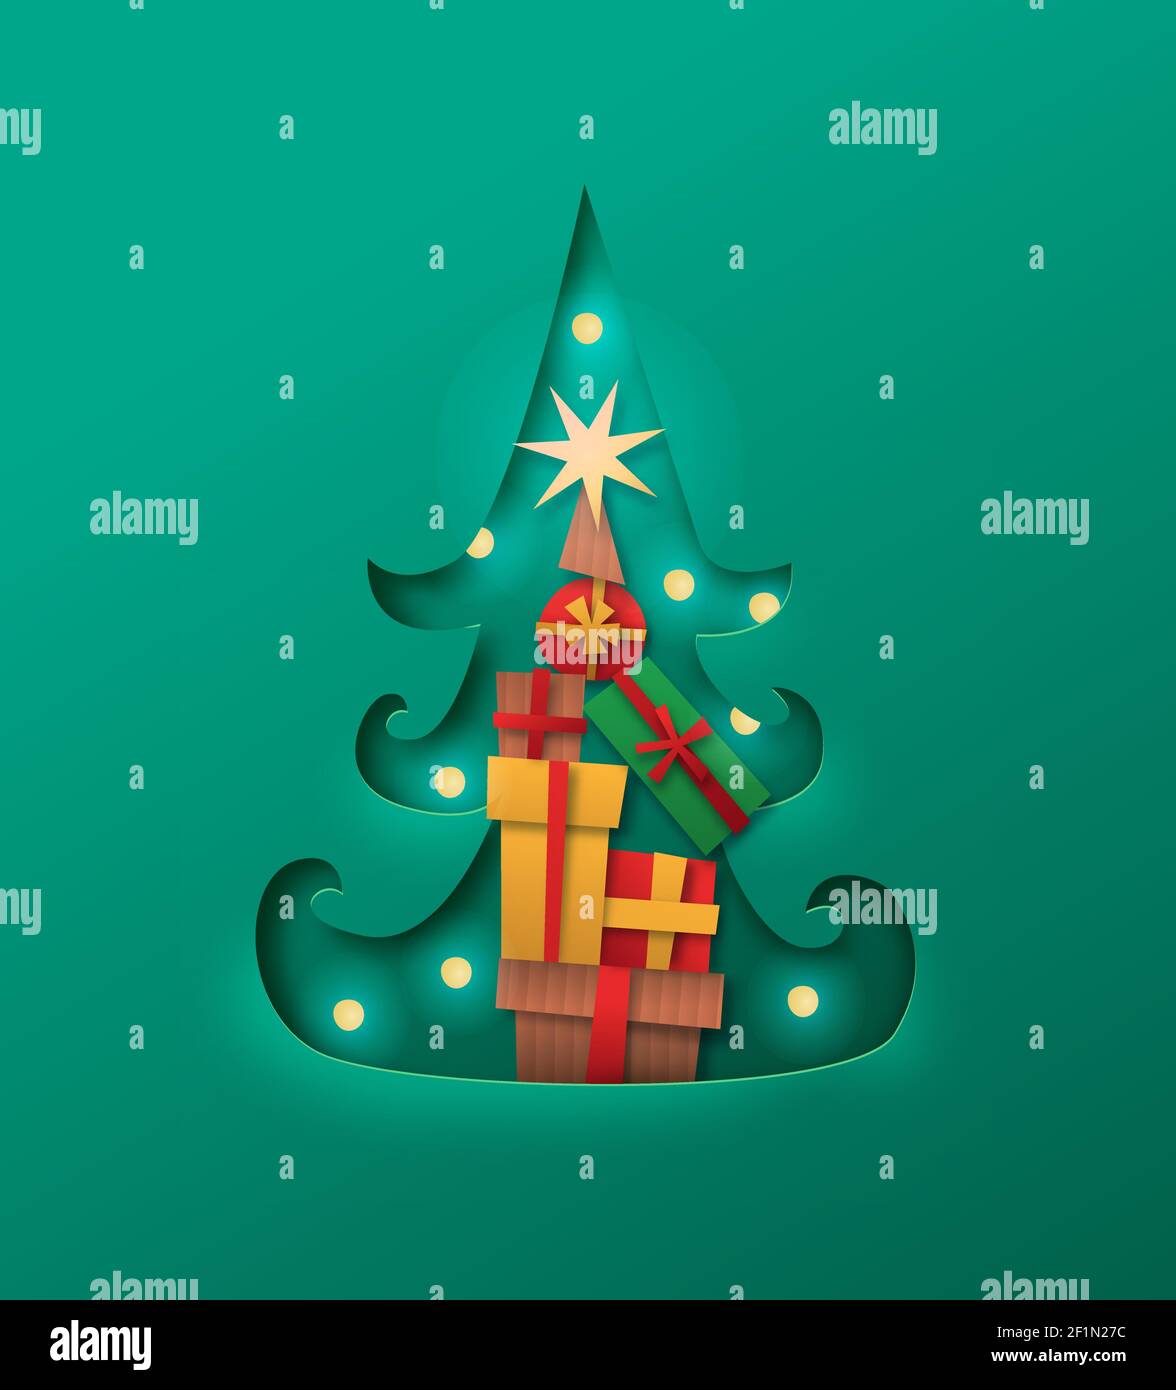 Frohe Weihnachten papercut Cartoon ilustration Konzept. Geschenkkarton im Inneren Kiefer Form in Karton Papier Material mit Urlaub Lichter und Stern oder gemacht Stock Vektor